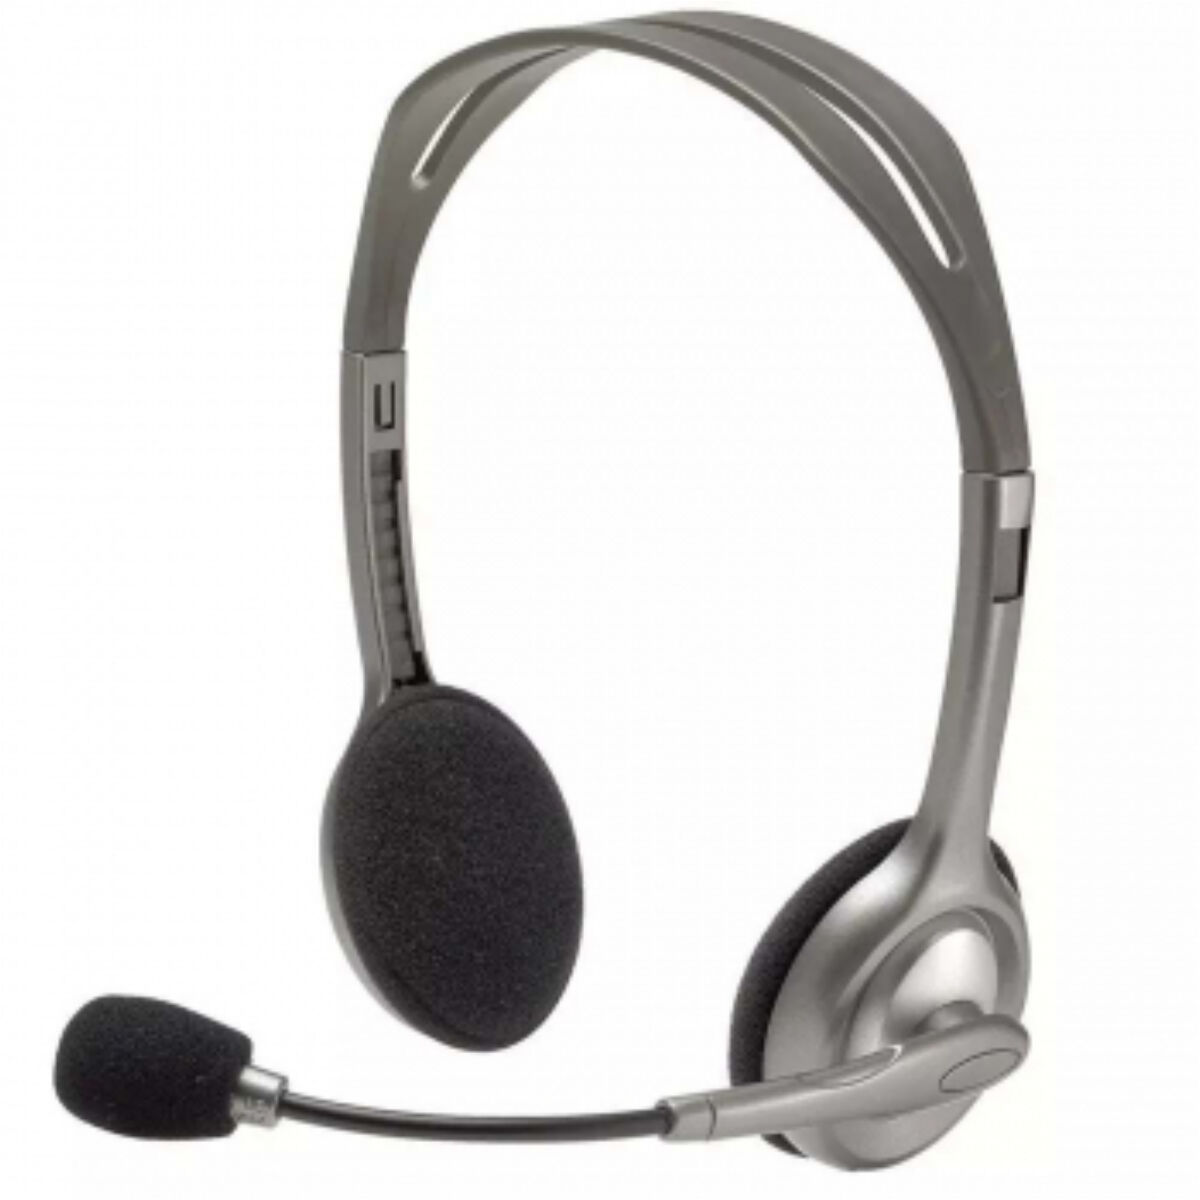 Kép 5/5 - Logitech Headset H110 vezetékes, mikrofonos sztereó fejhallgató duál jack csatlakozóval szürke EU (981-000472)